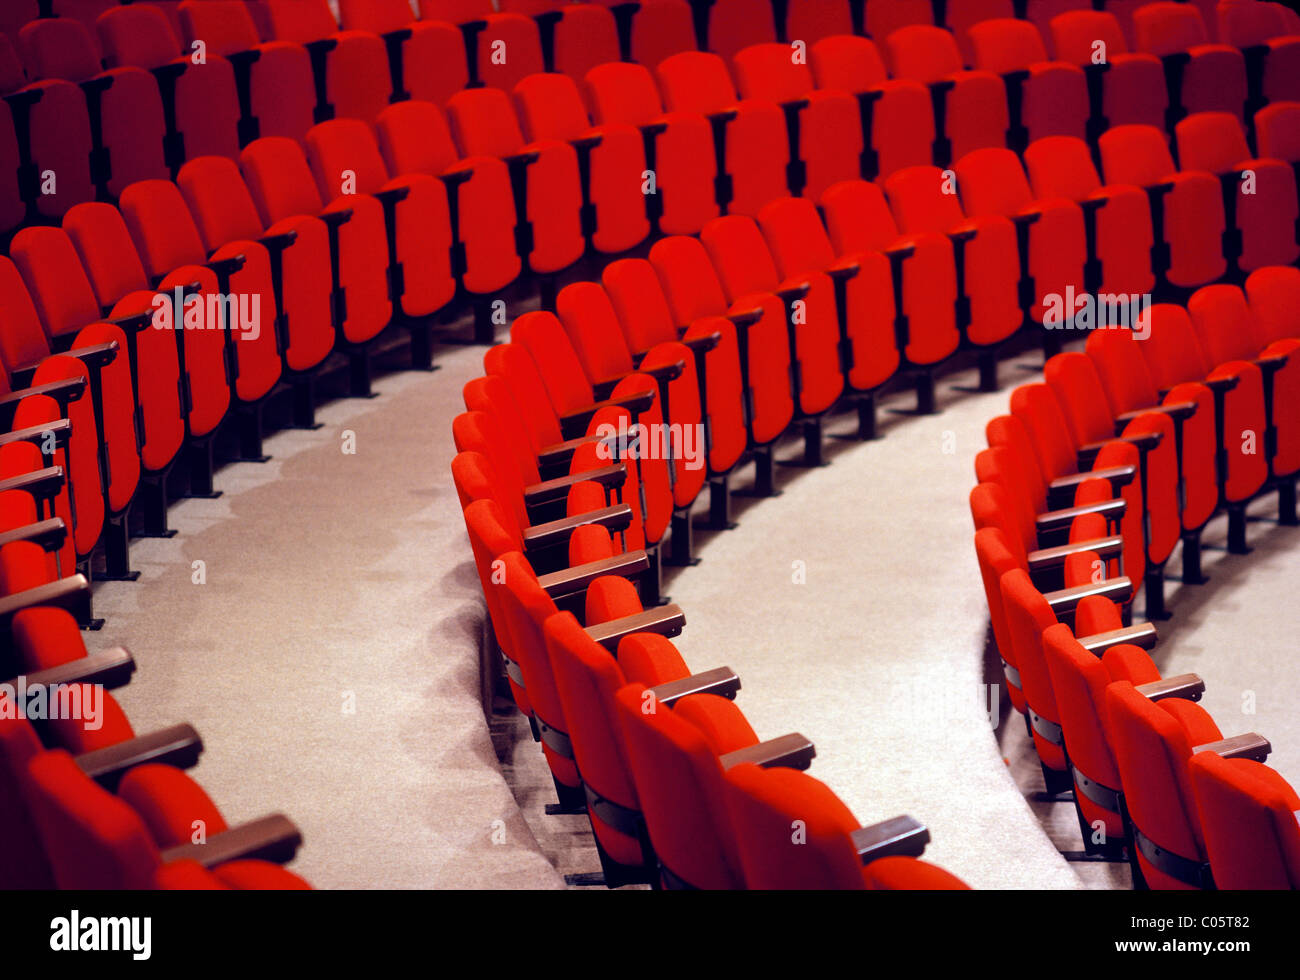 Les lignes incurvées de fauteuils rouges dans un auditorium. Banque D'Images